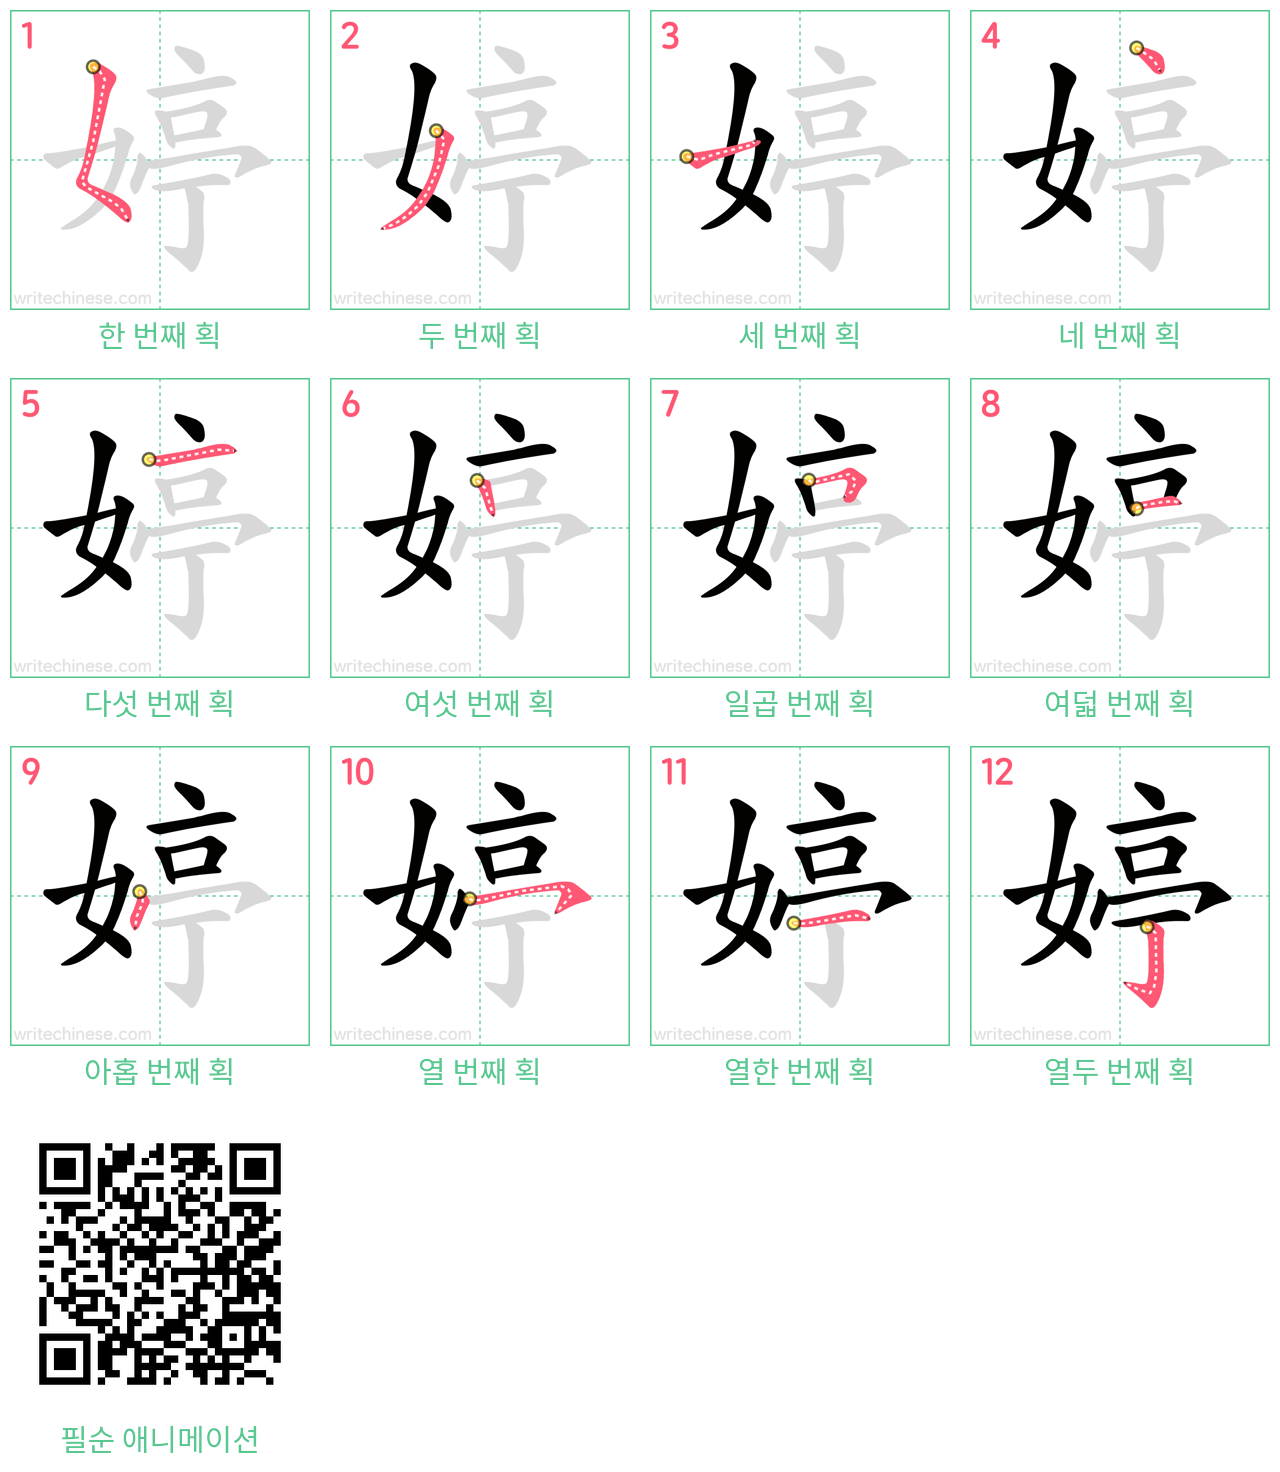 婷 step-by-step stroke order diagrams